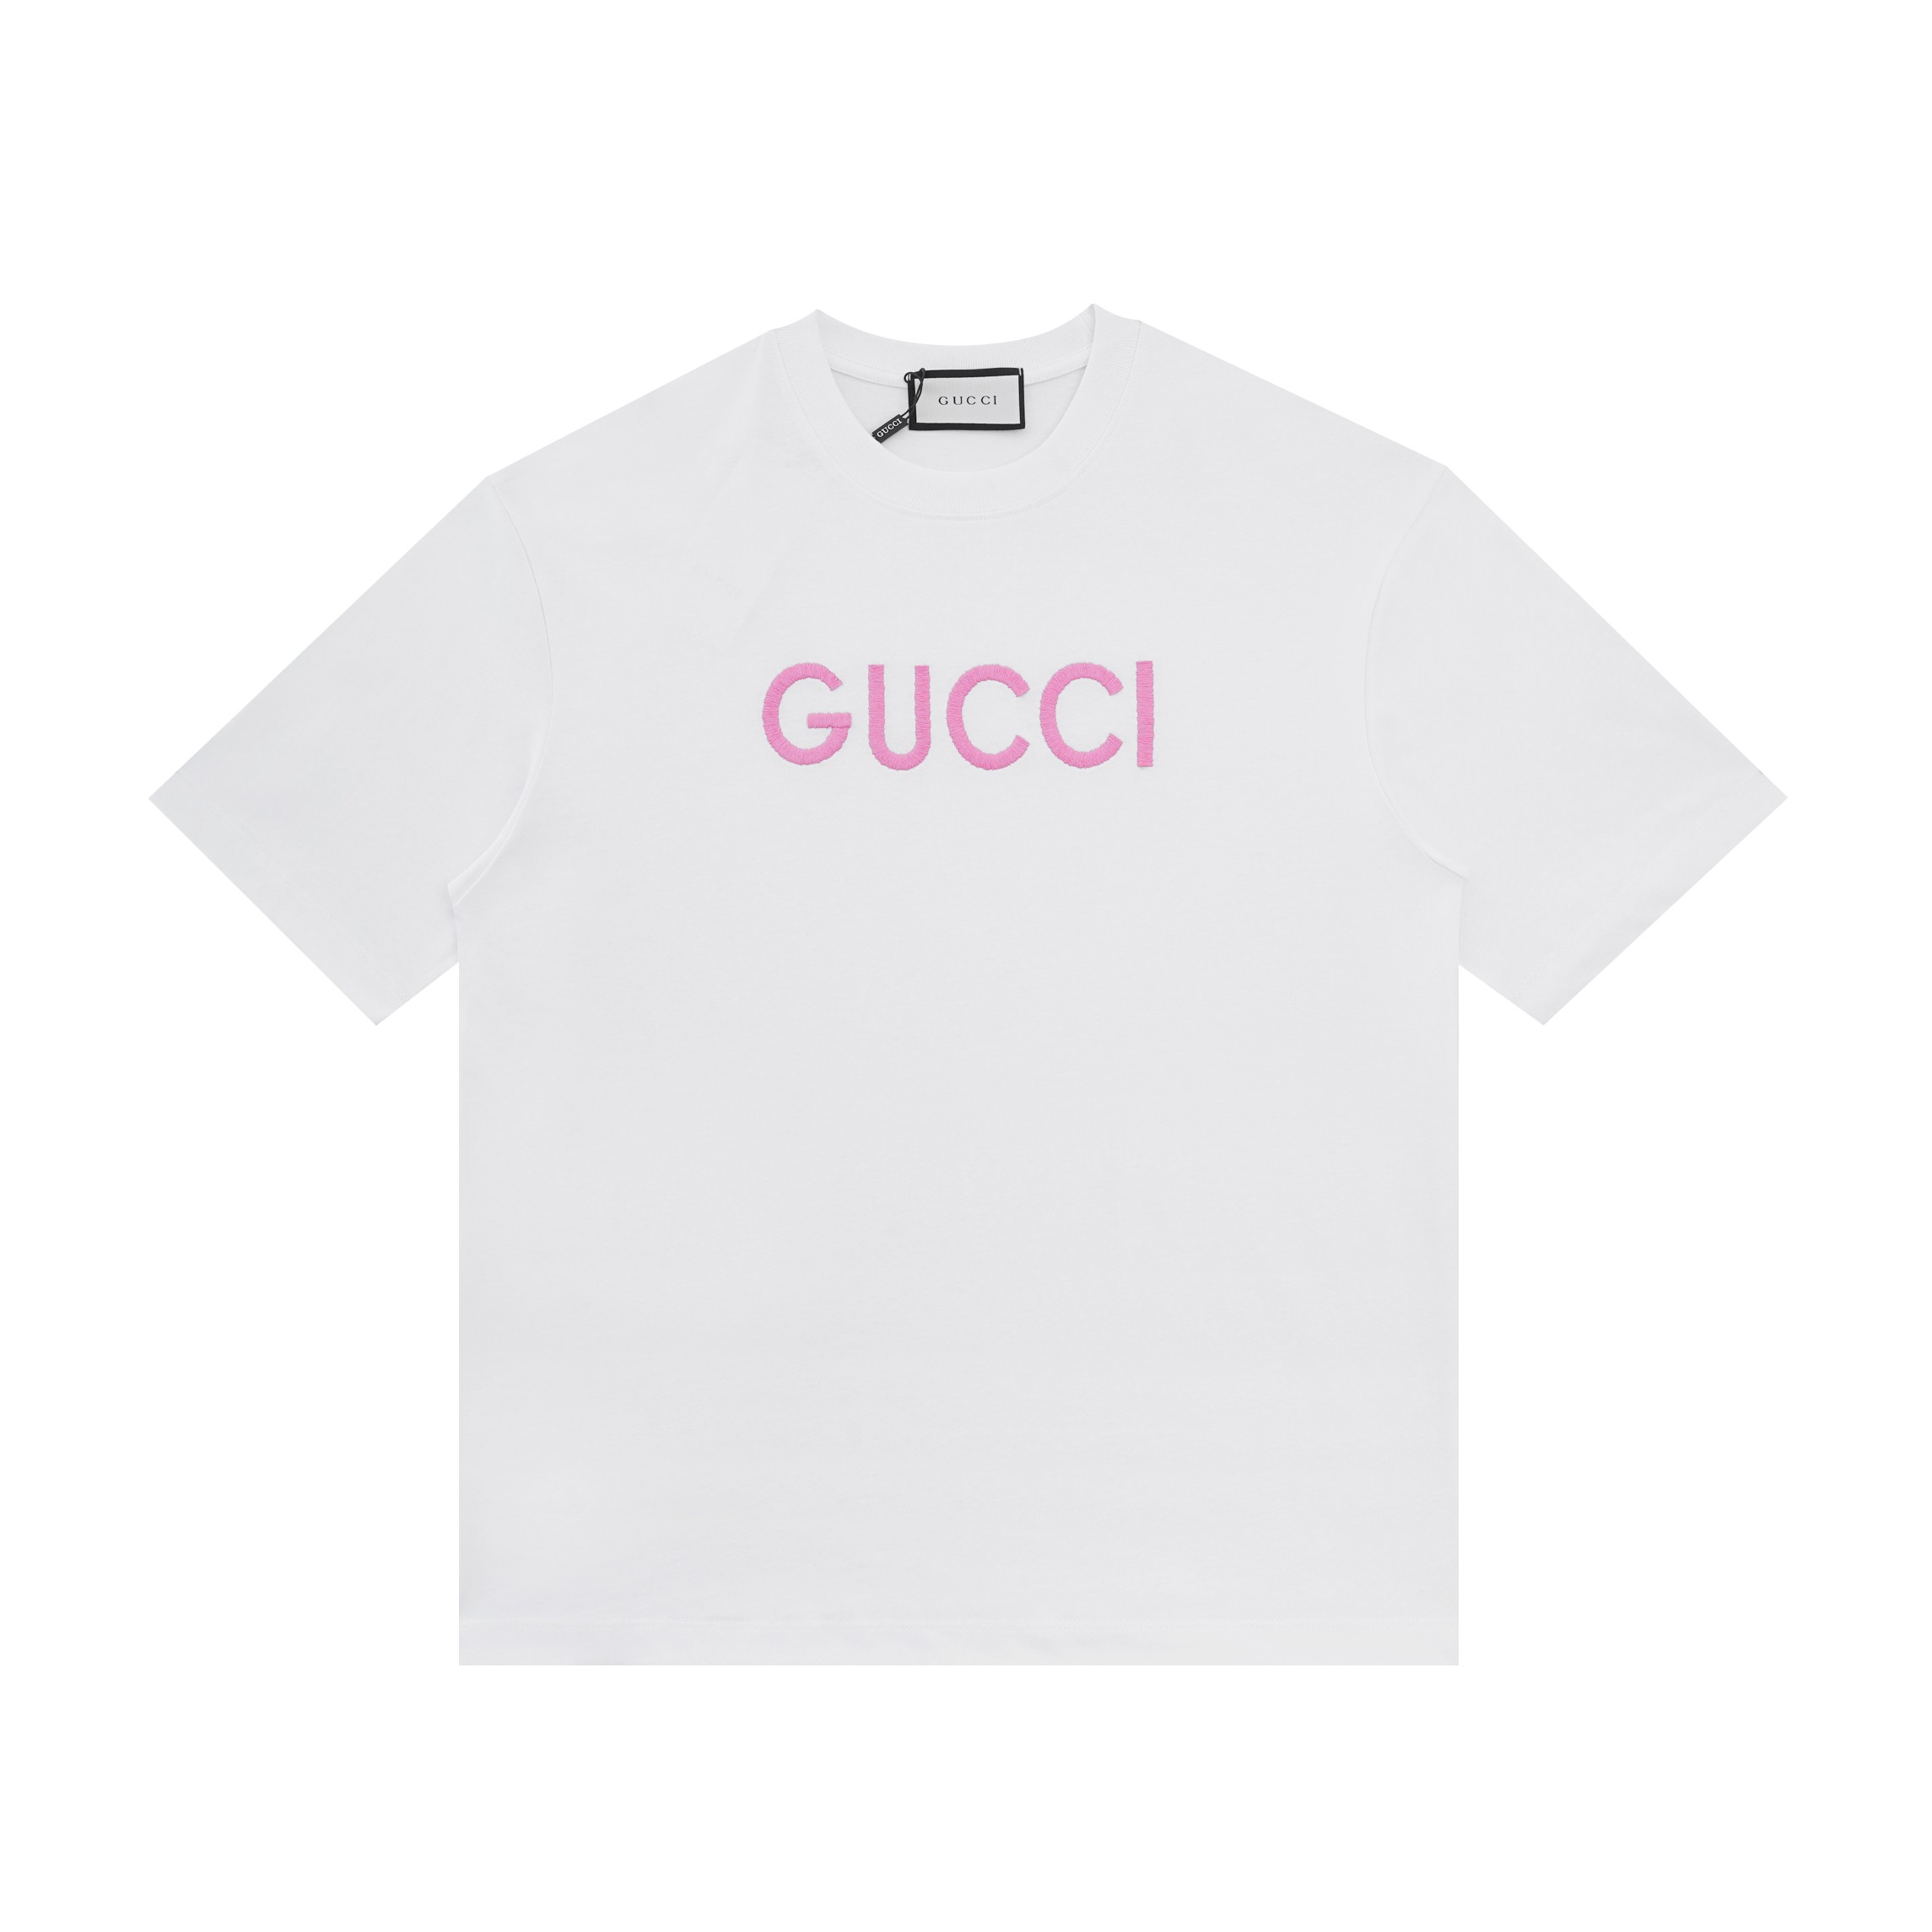 Gucci Odzież T-Shirt Biały Bawełna czesana Krótki rękaw